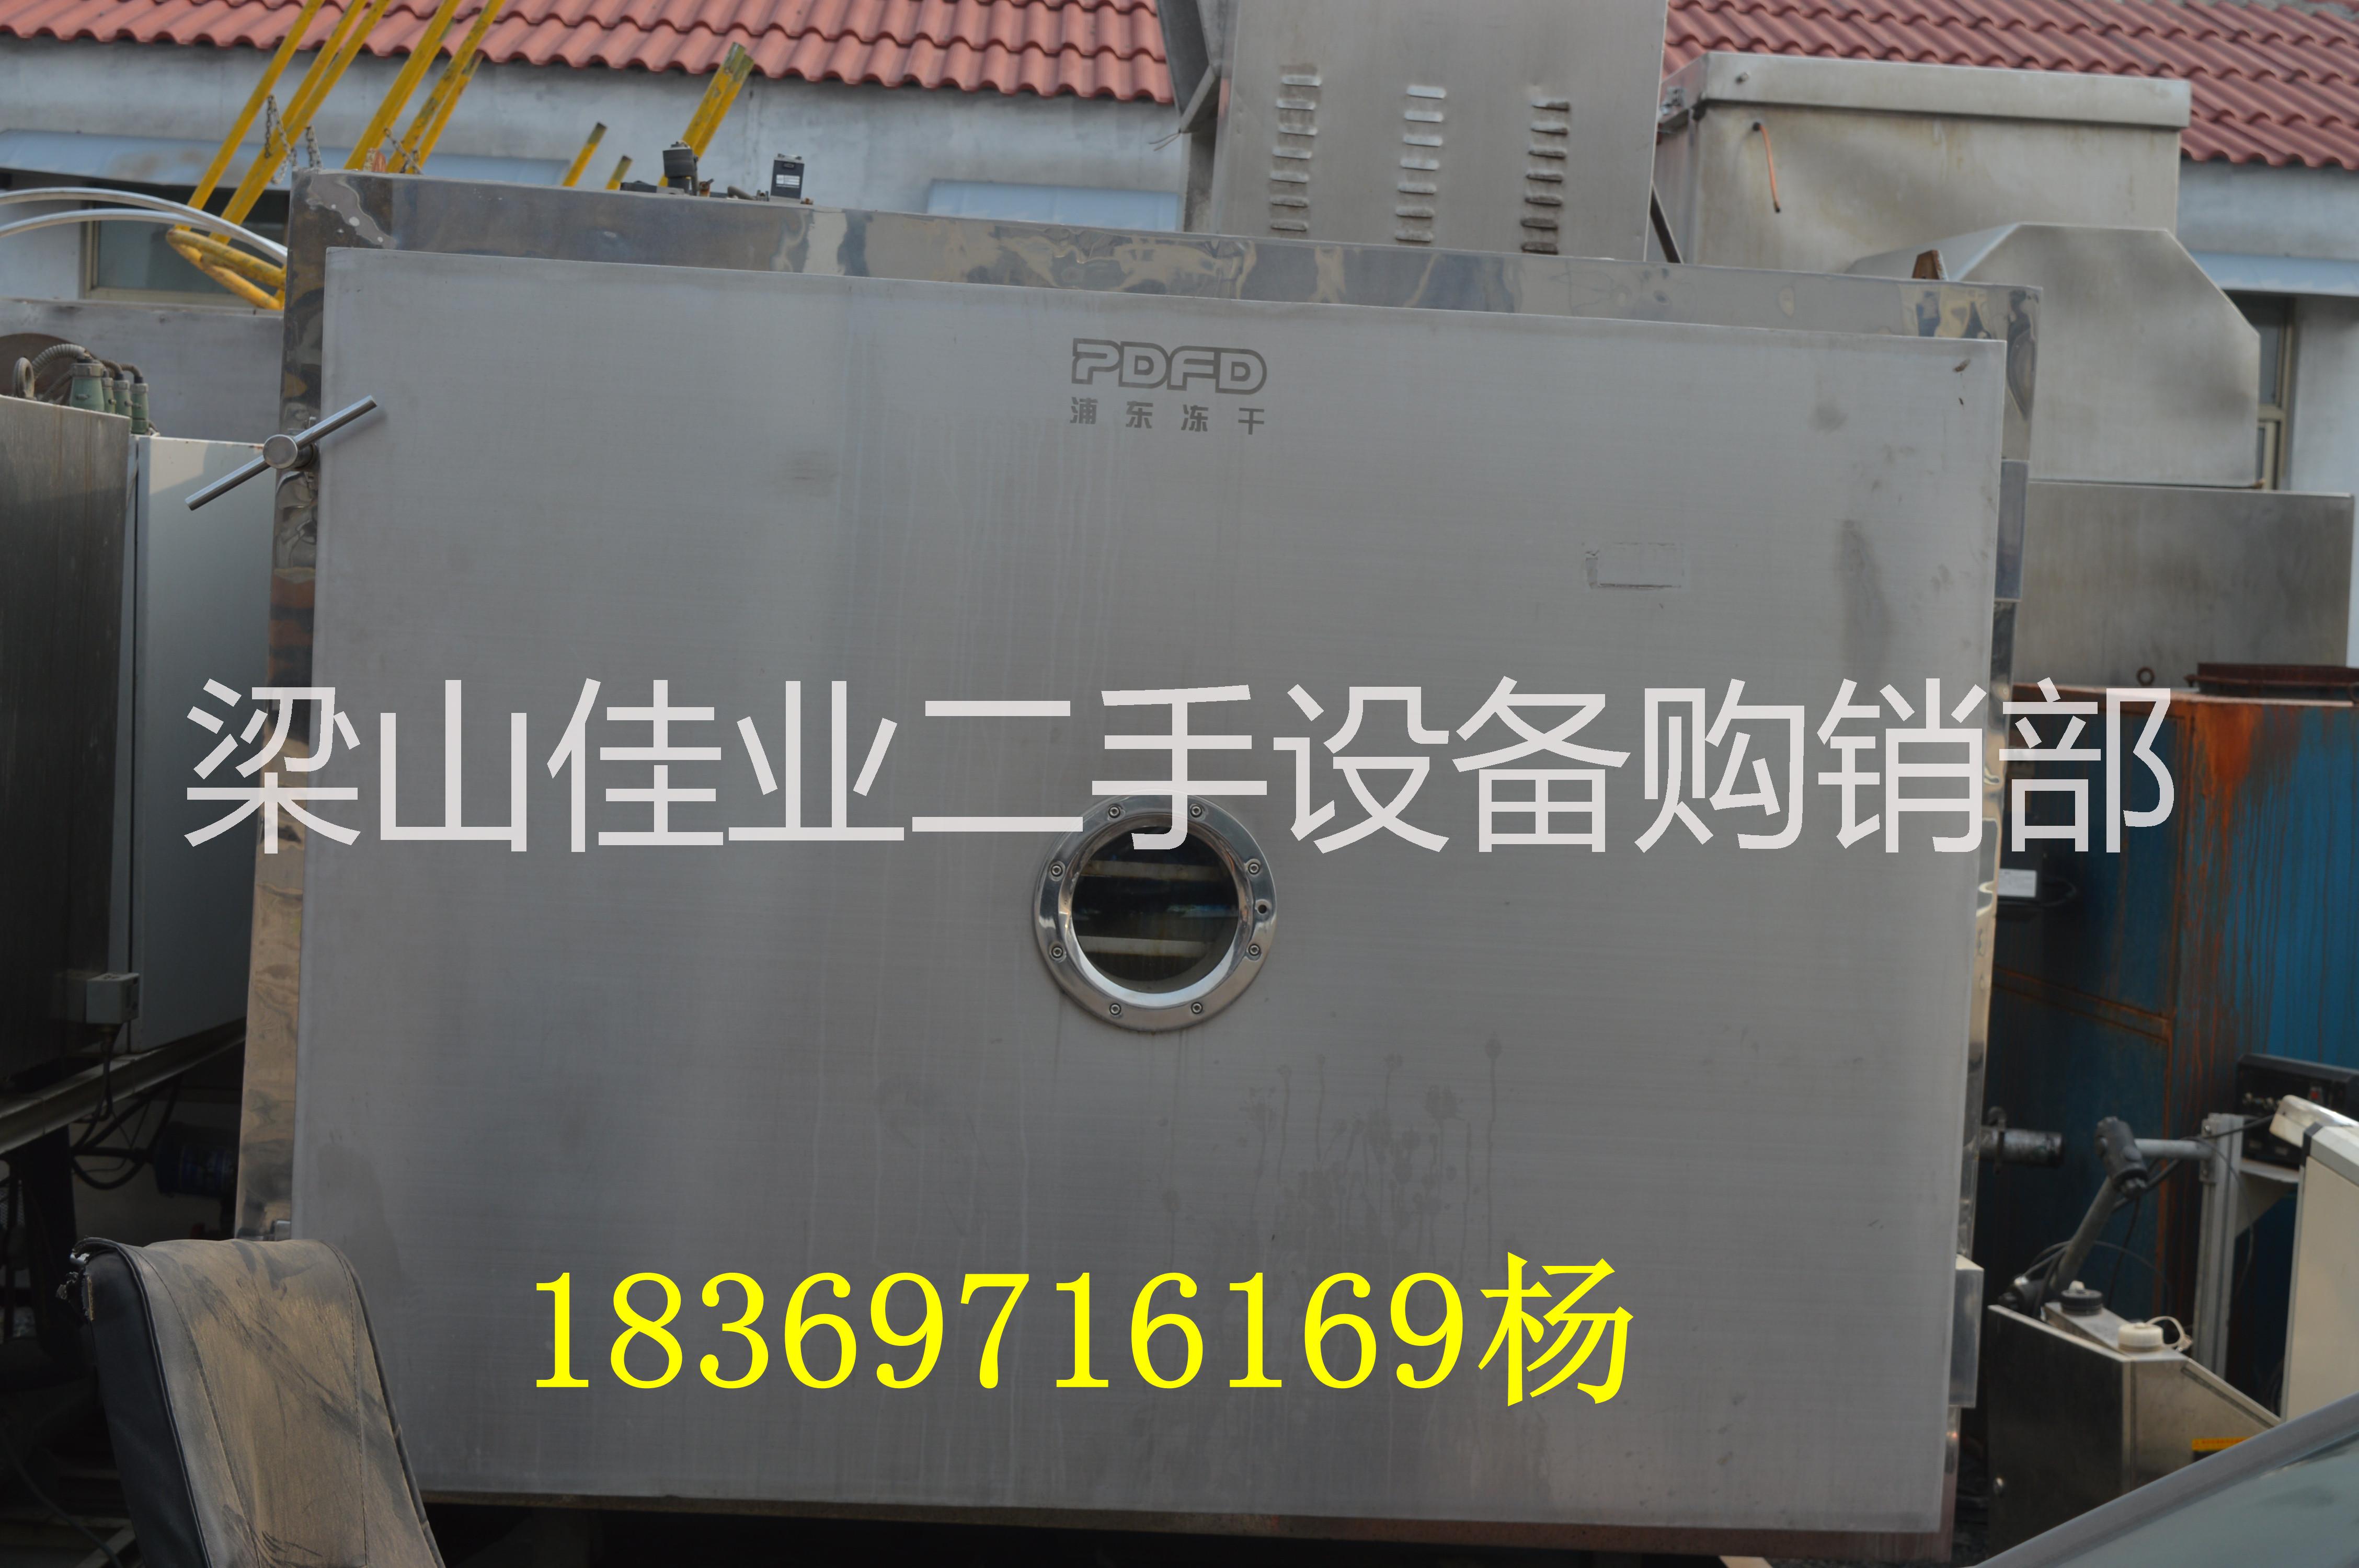 山东二手冻干机供应商出售二手冻干机二手干燥机二手烘干机18369716169图片